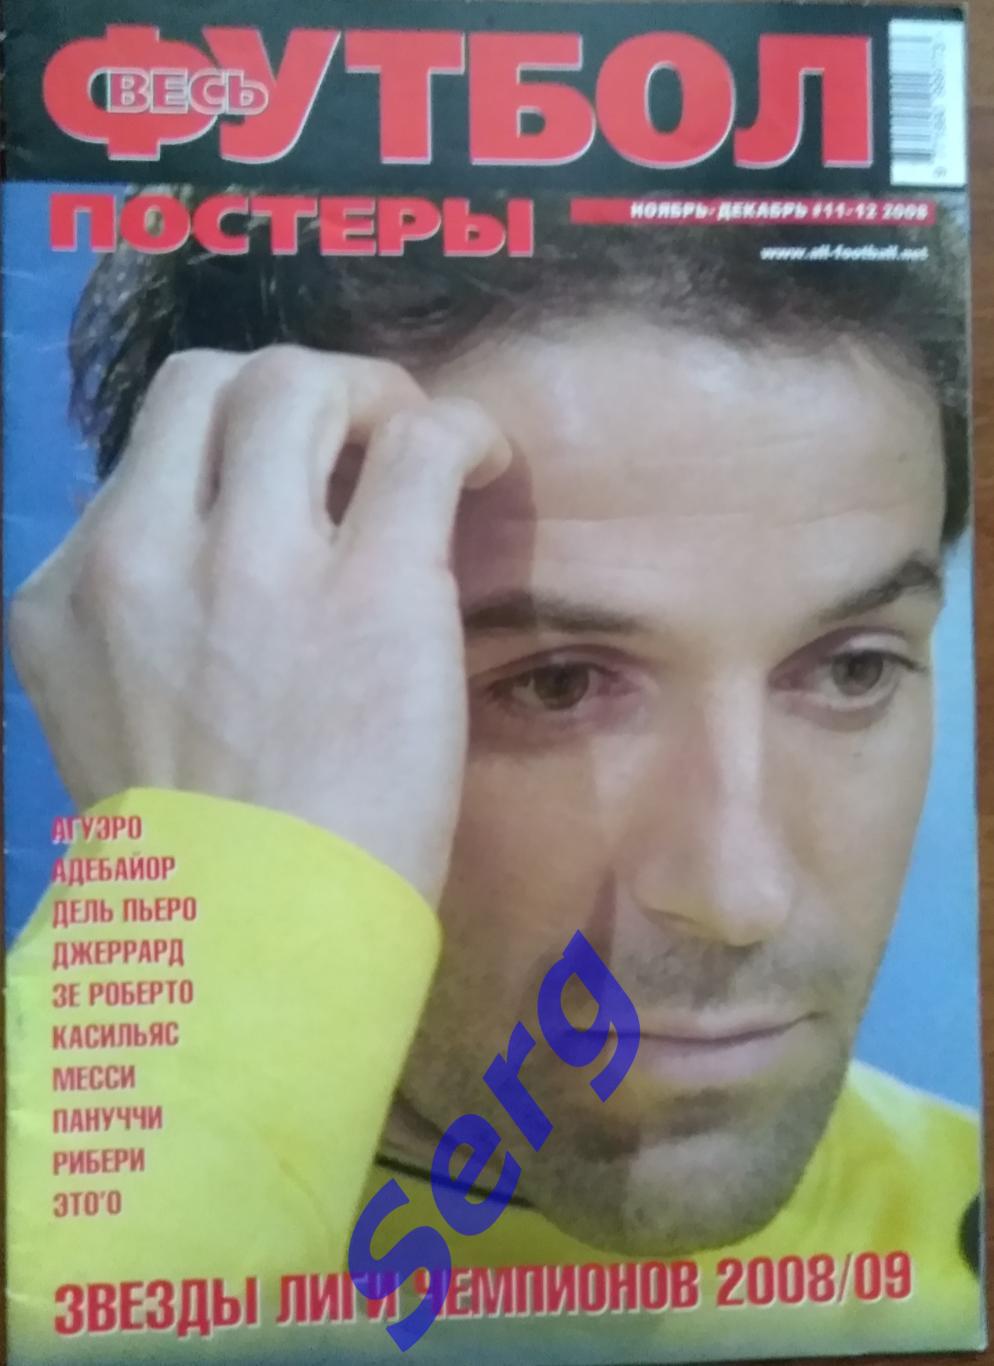 Журнал Весь футбол. Постеры №11-12 ноябрь-декабрь 2008 год